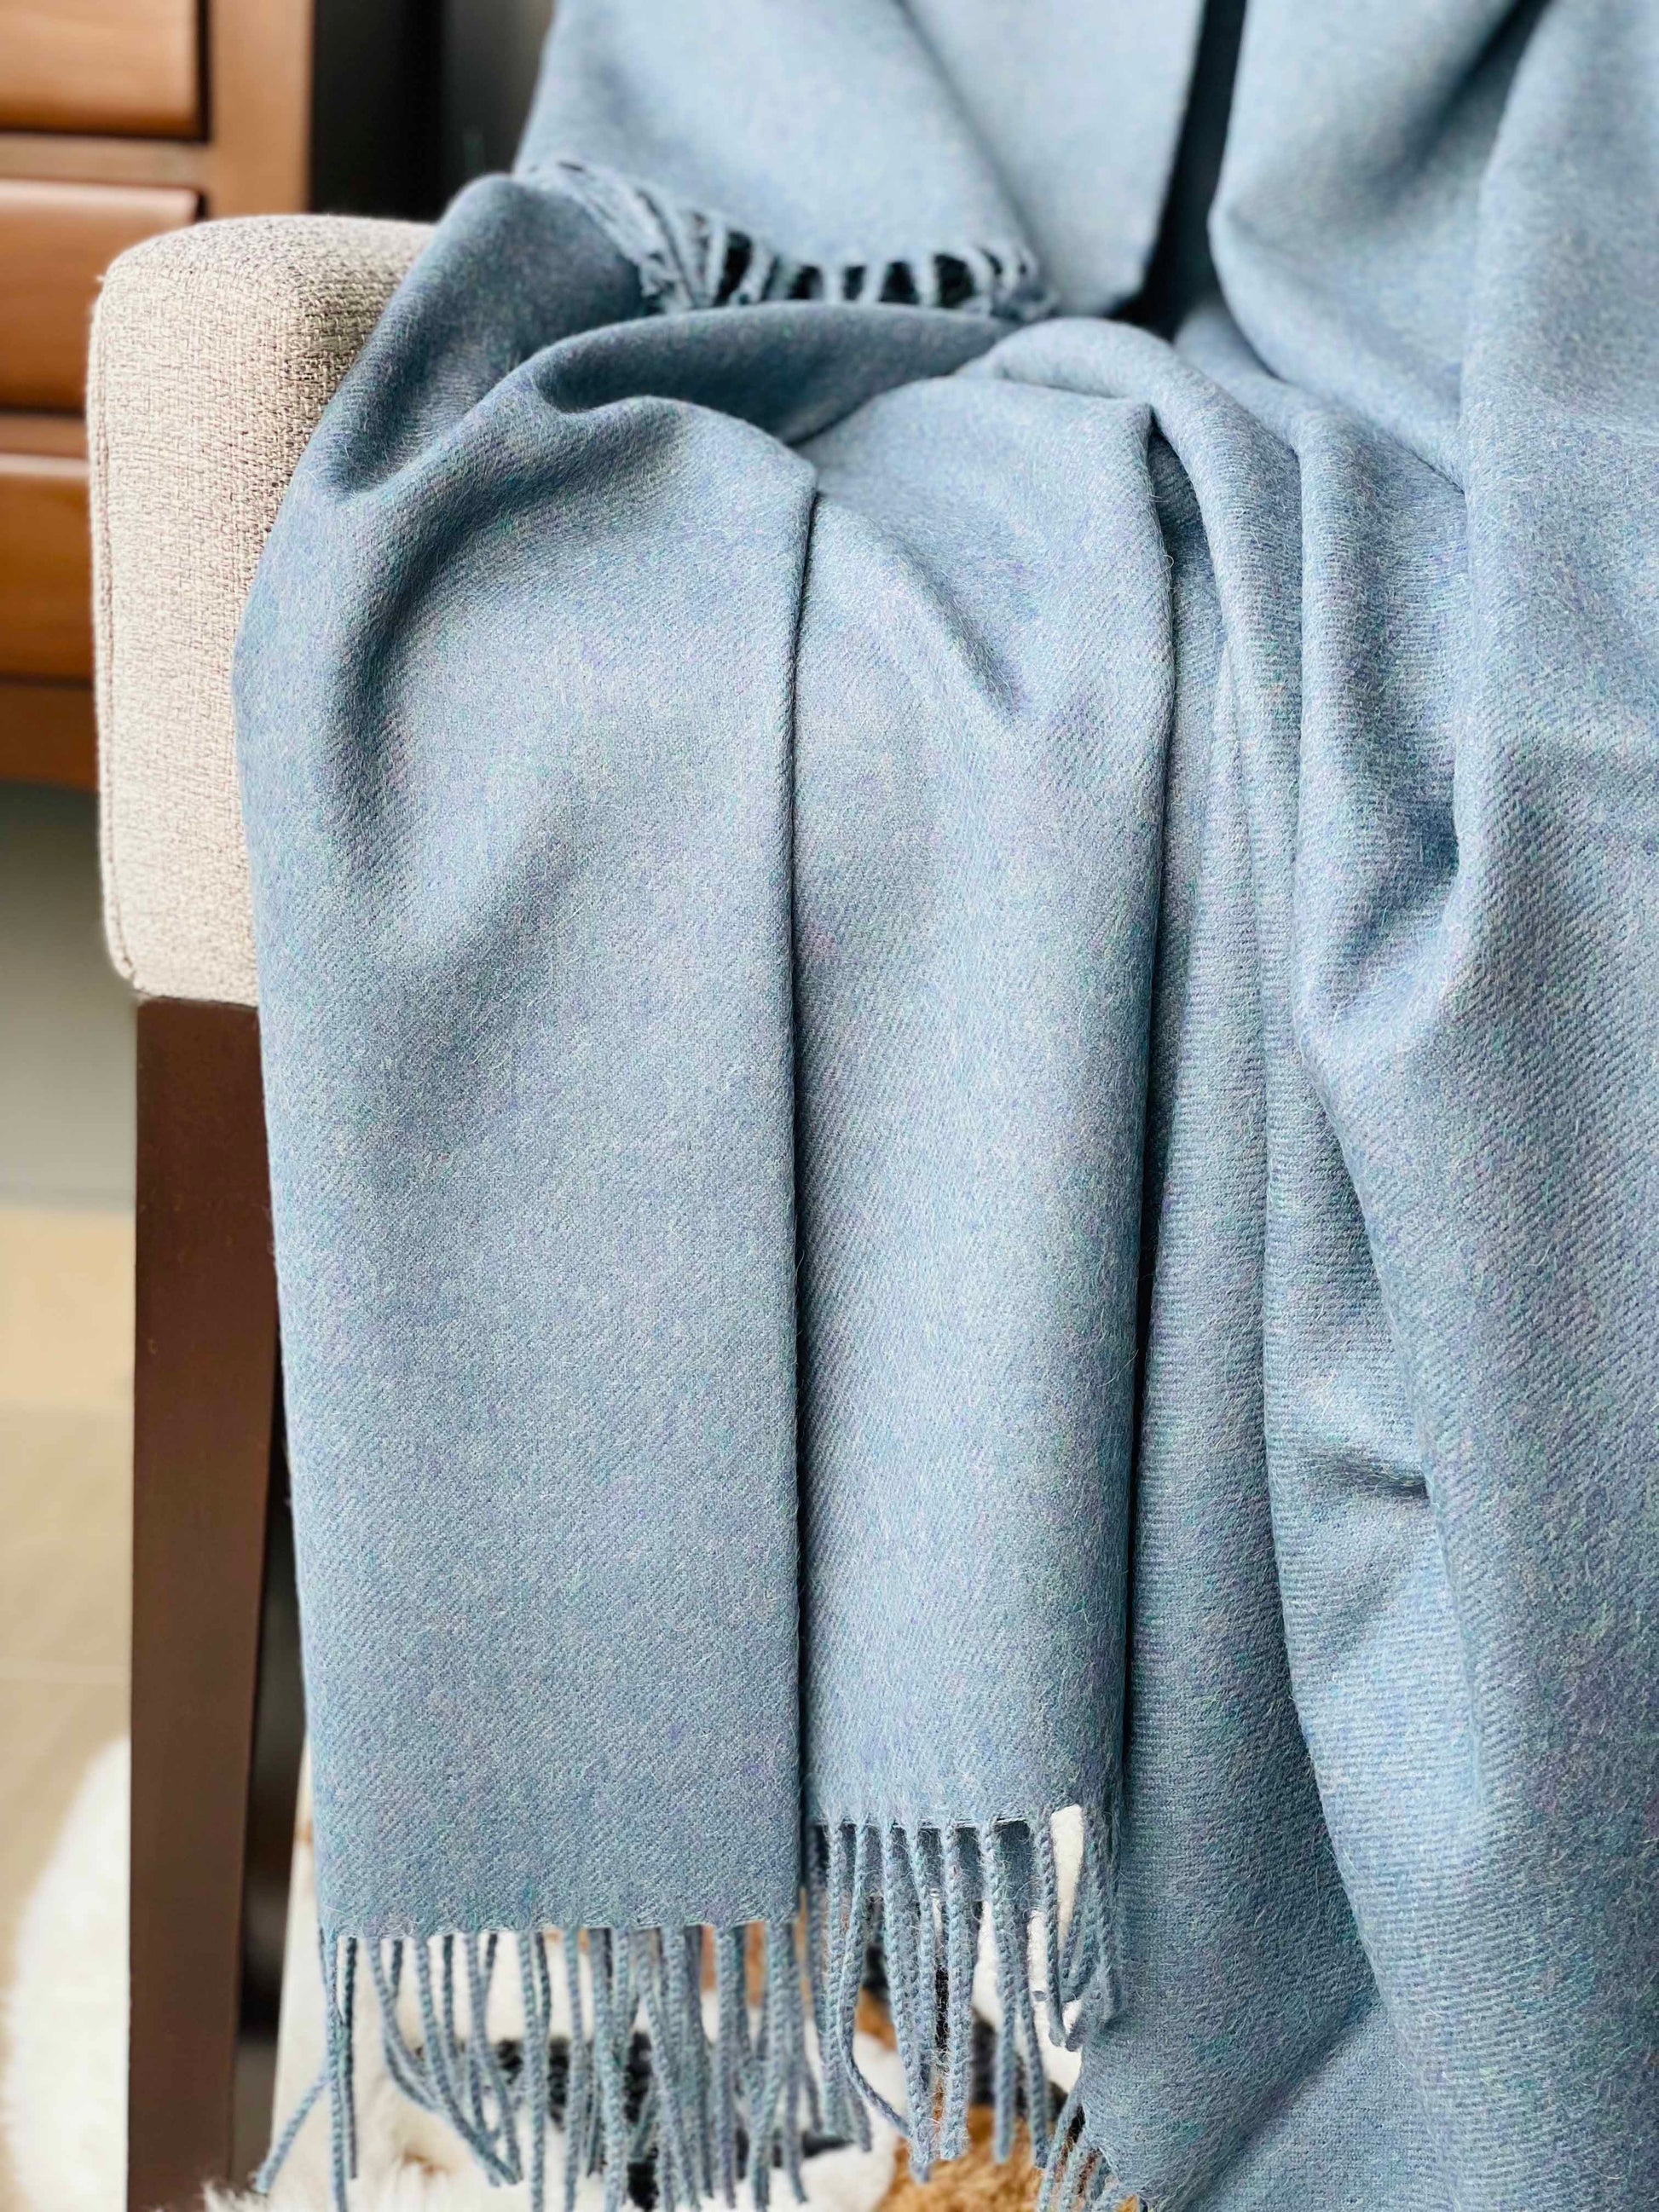 Blanket from alpaca wool in blue color